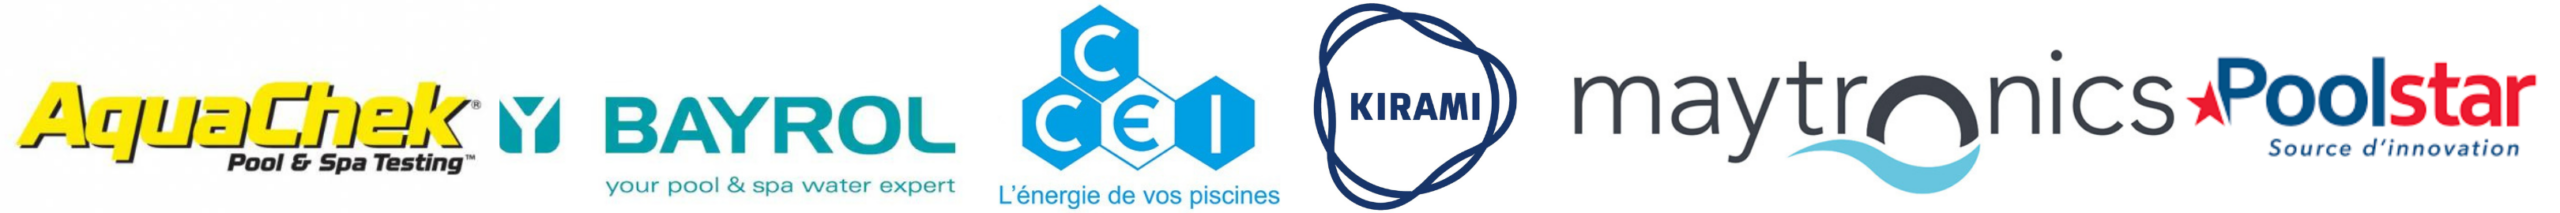 Caroussel de logos de marques associées à Label Piscines 3